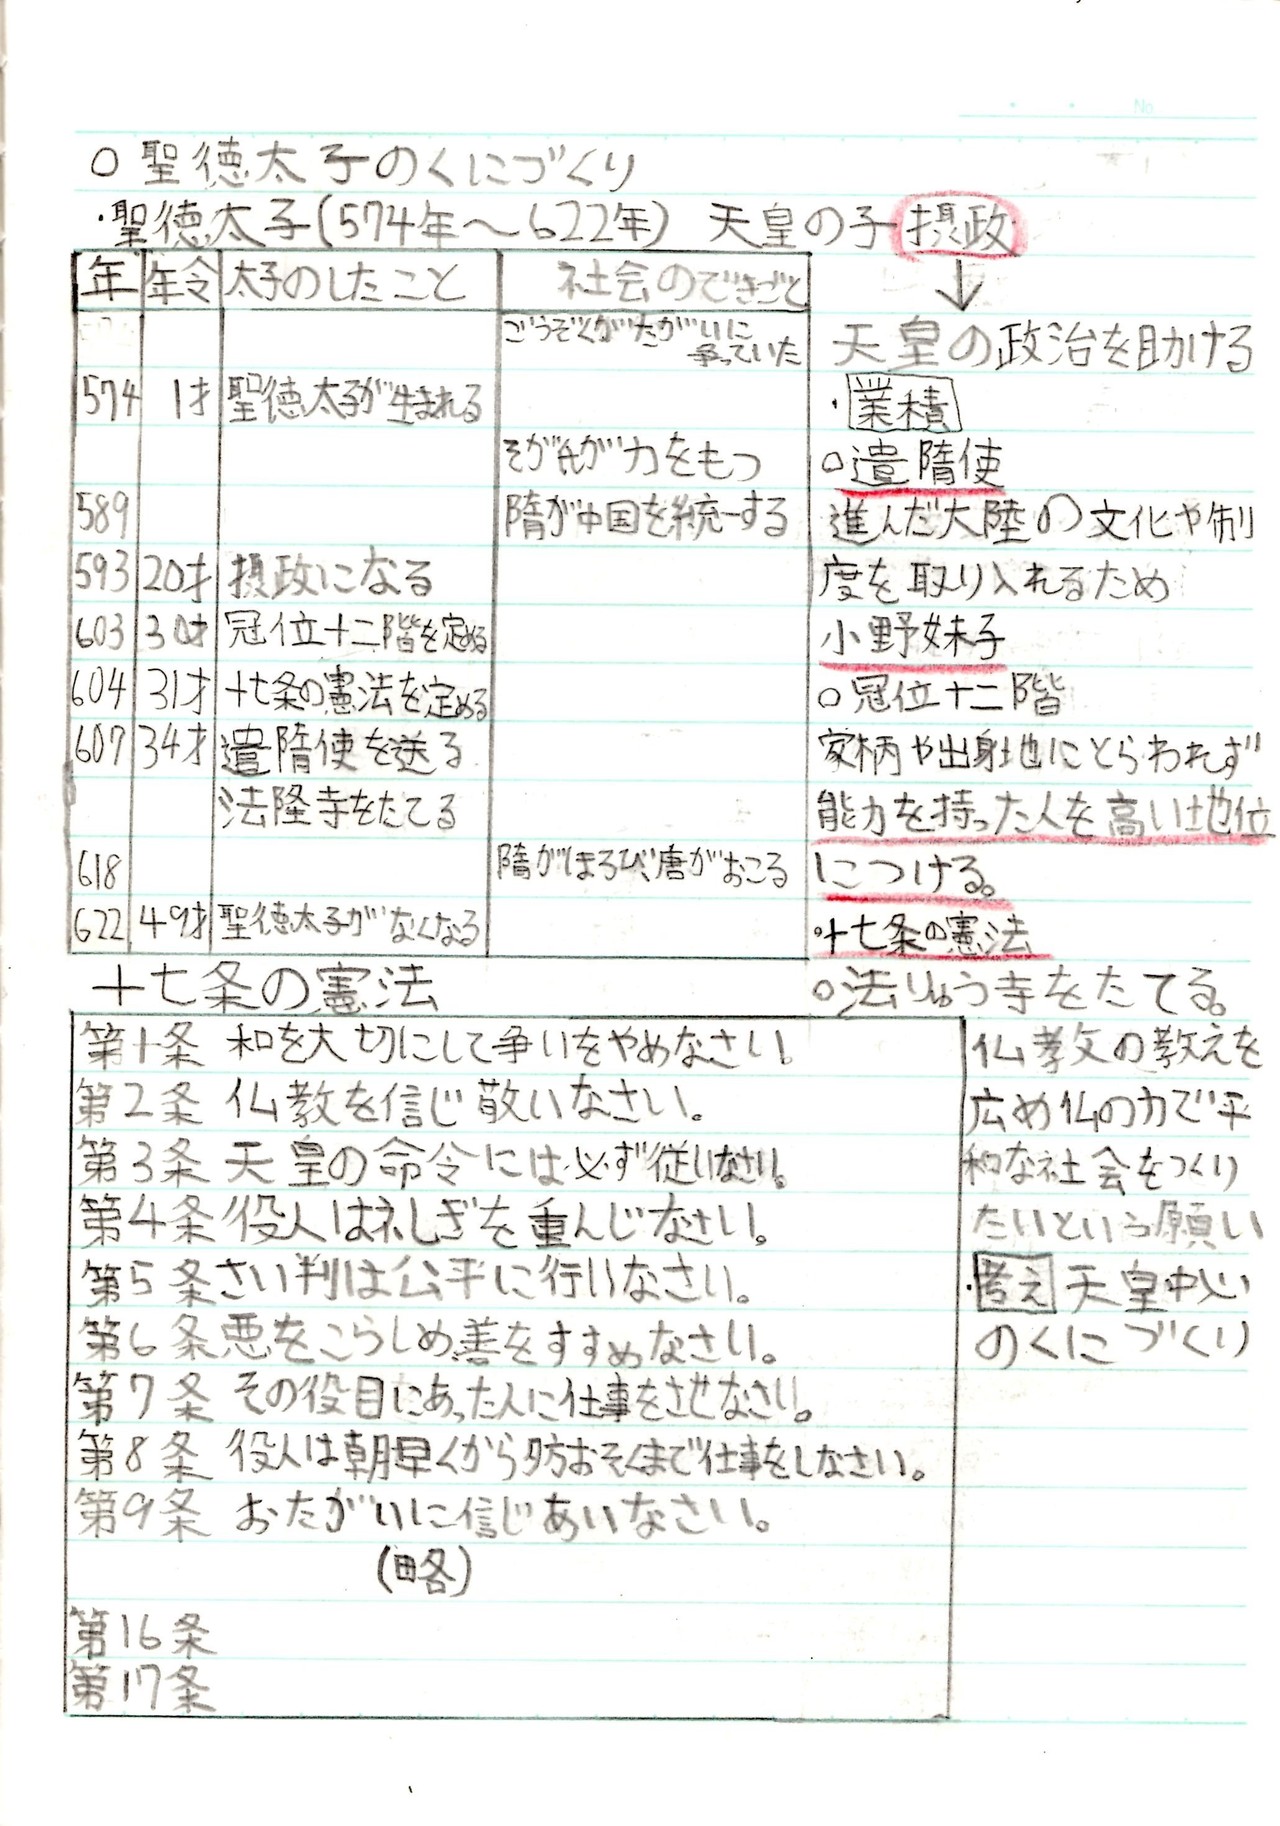 小6の時の社会 日本の歴史 のノート ほしねぇ Note